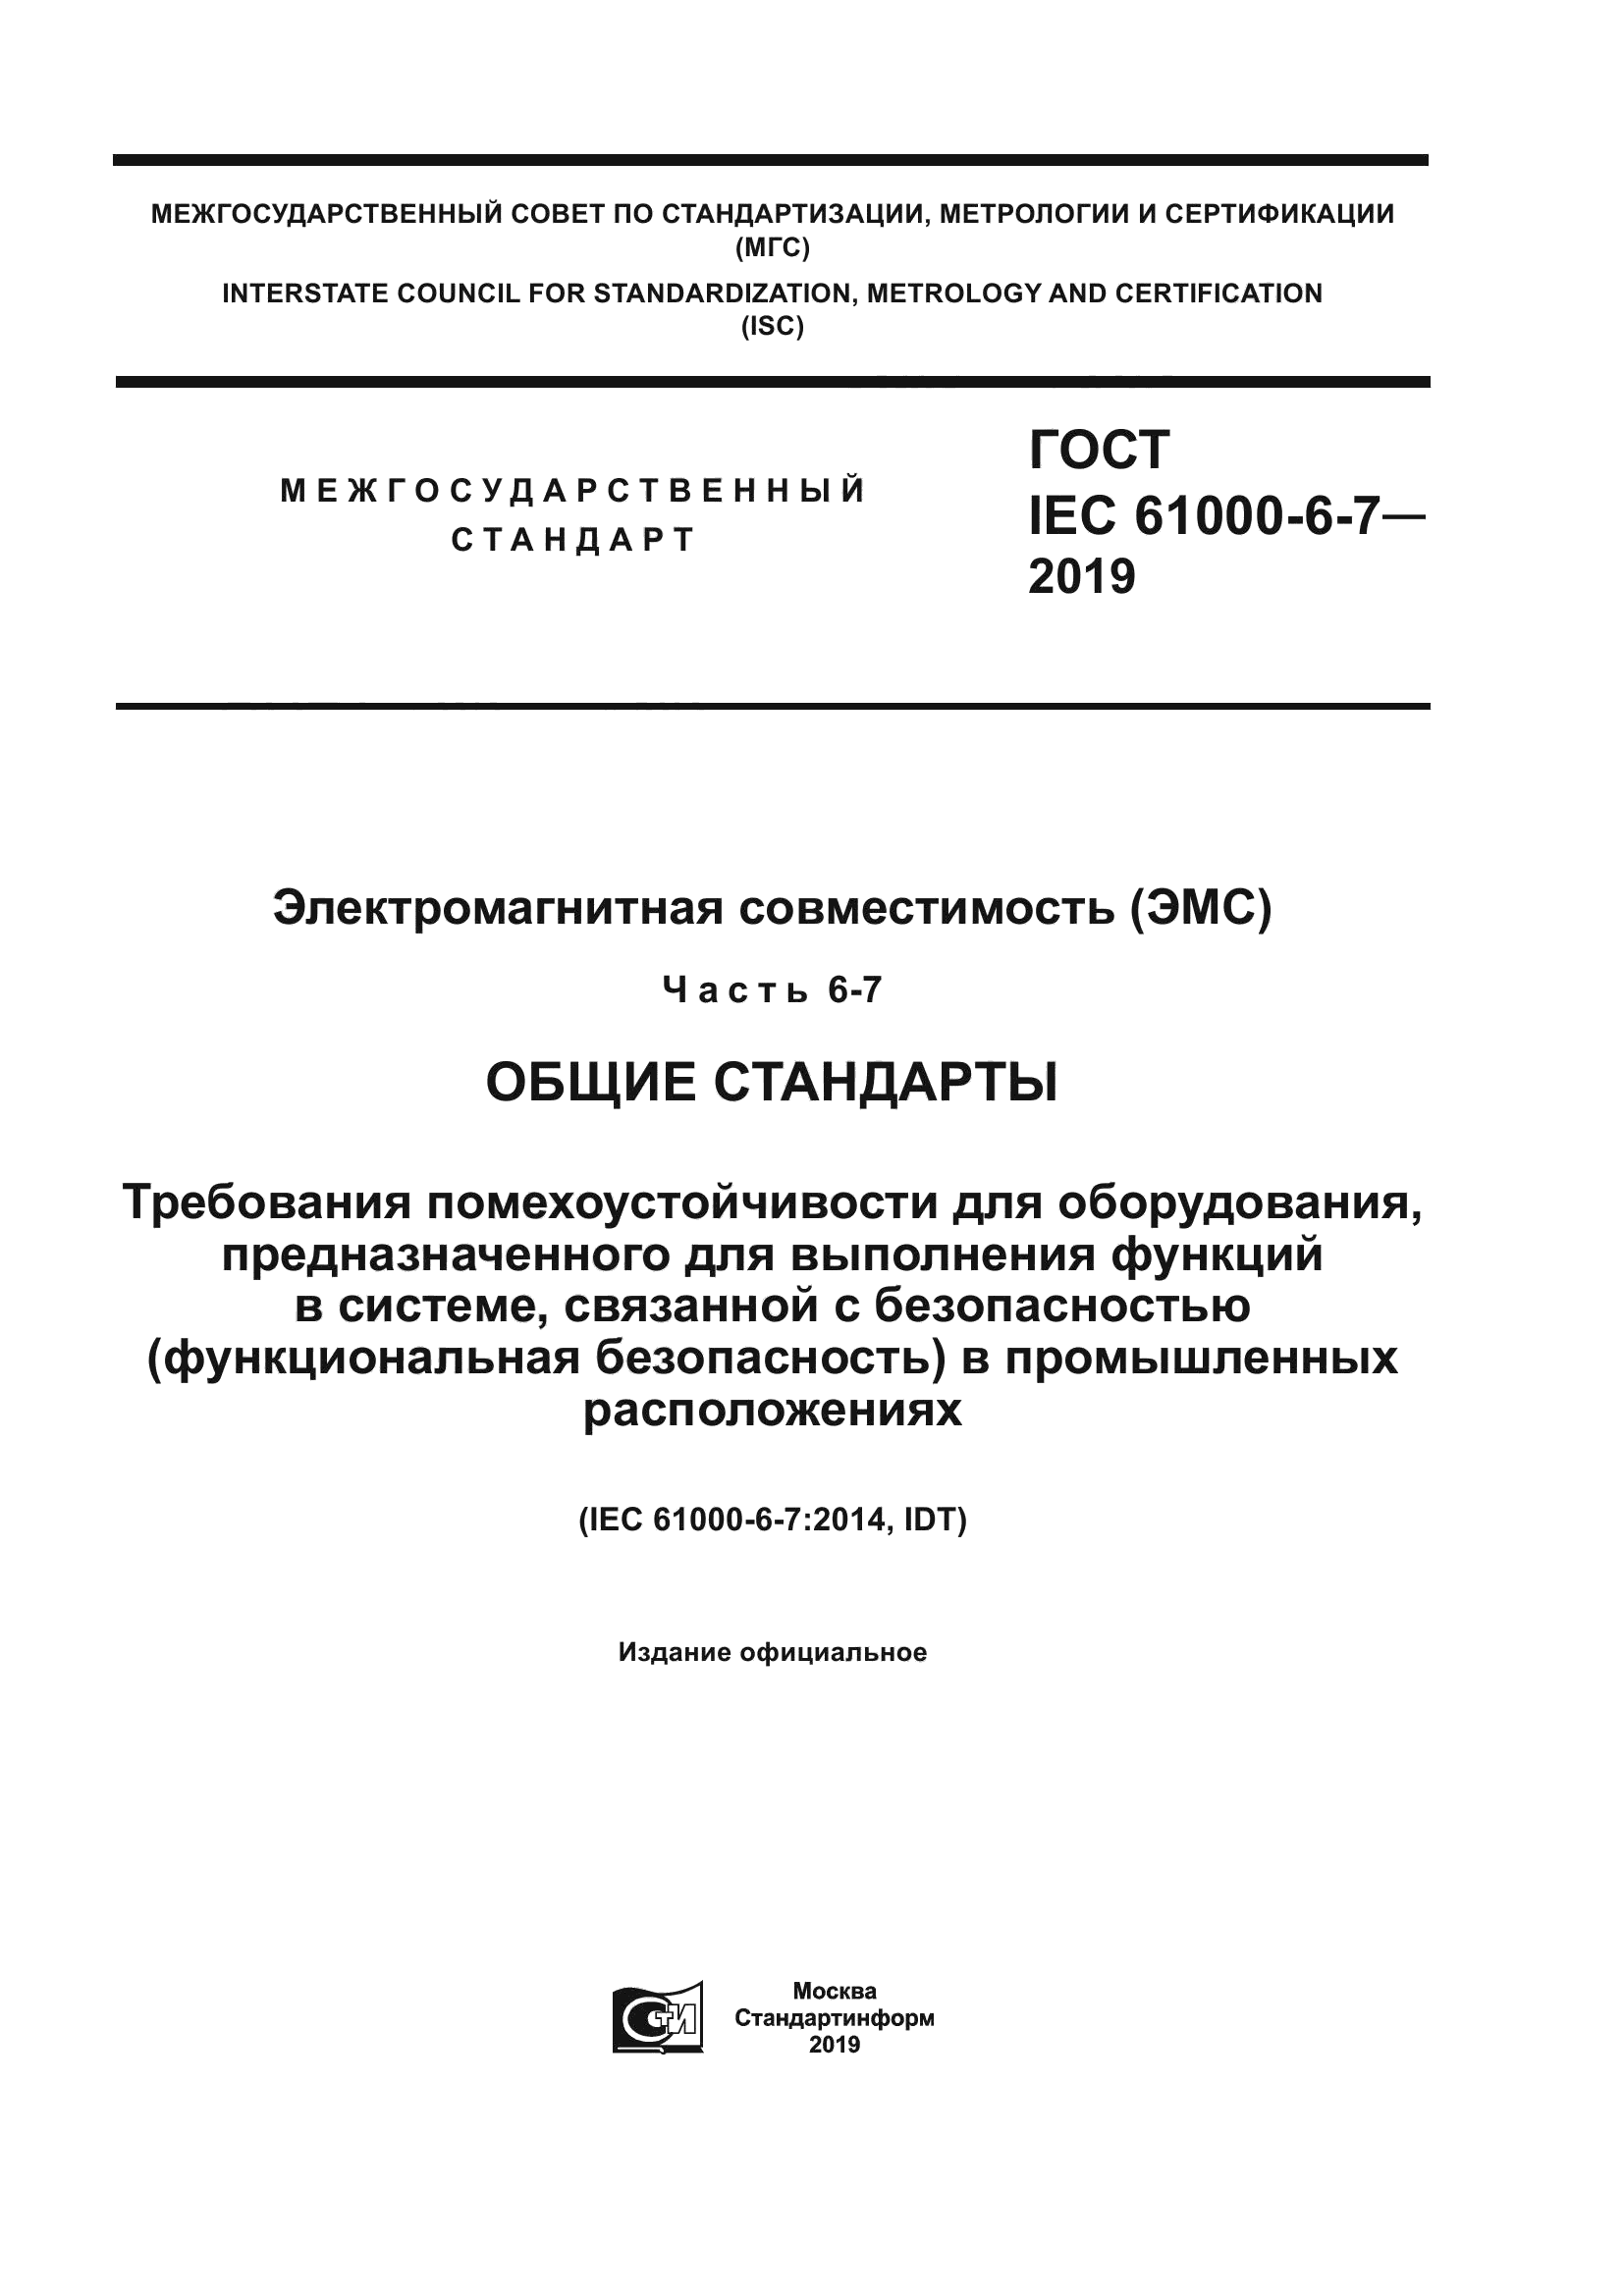 ГОСТ IEC 61000-6-7-2019